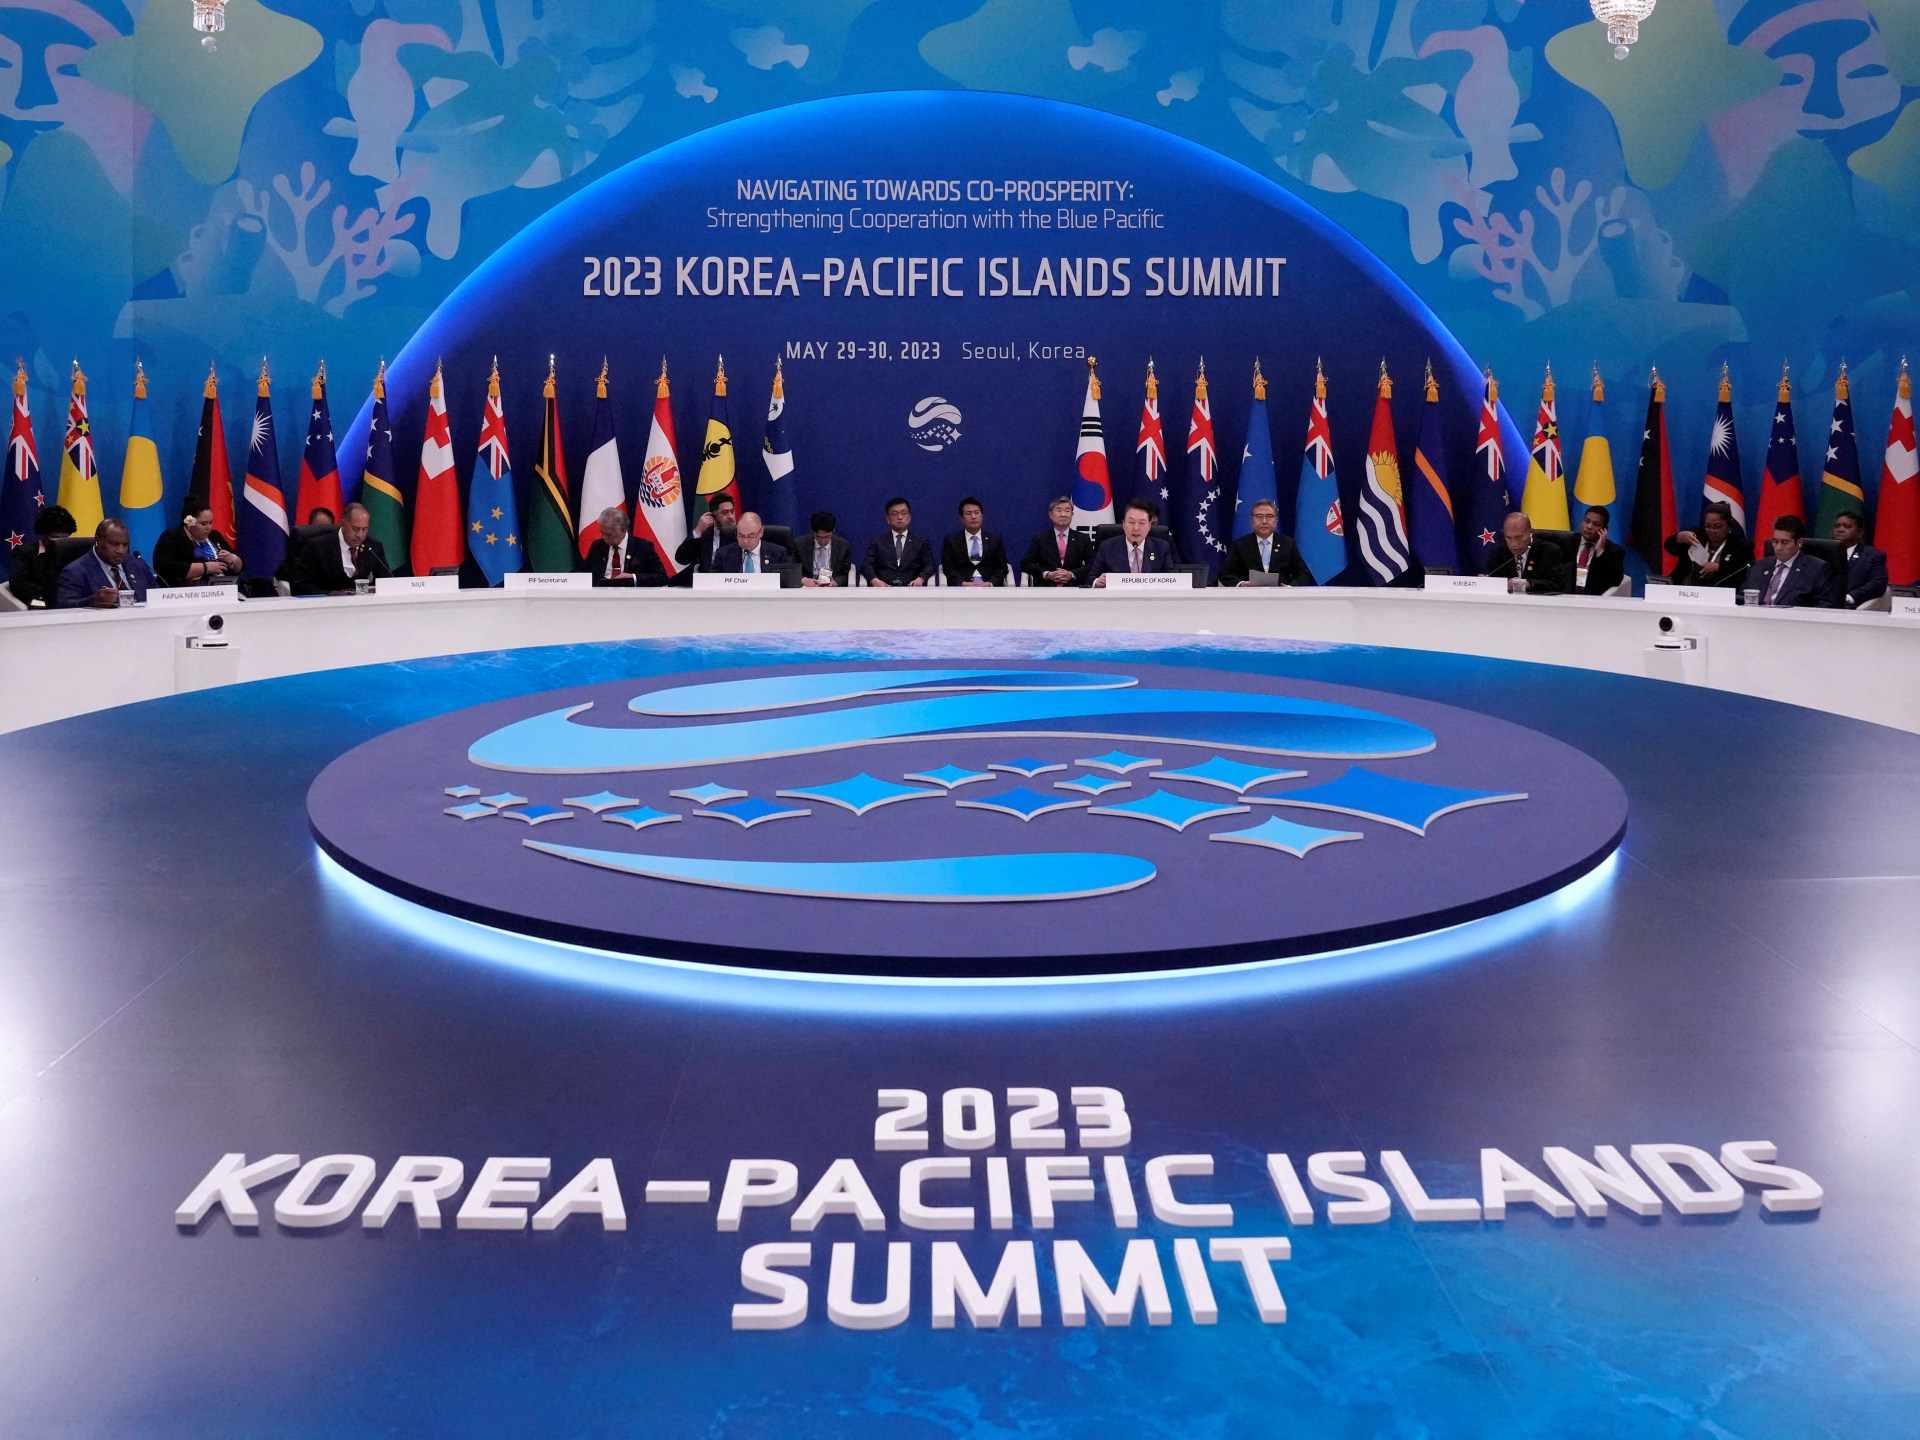 한국, 태평양 제도, 사상 첫 정상회담 후 관계 강화 |  소식